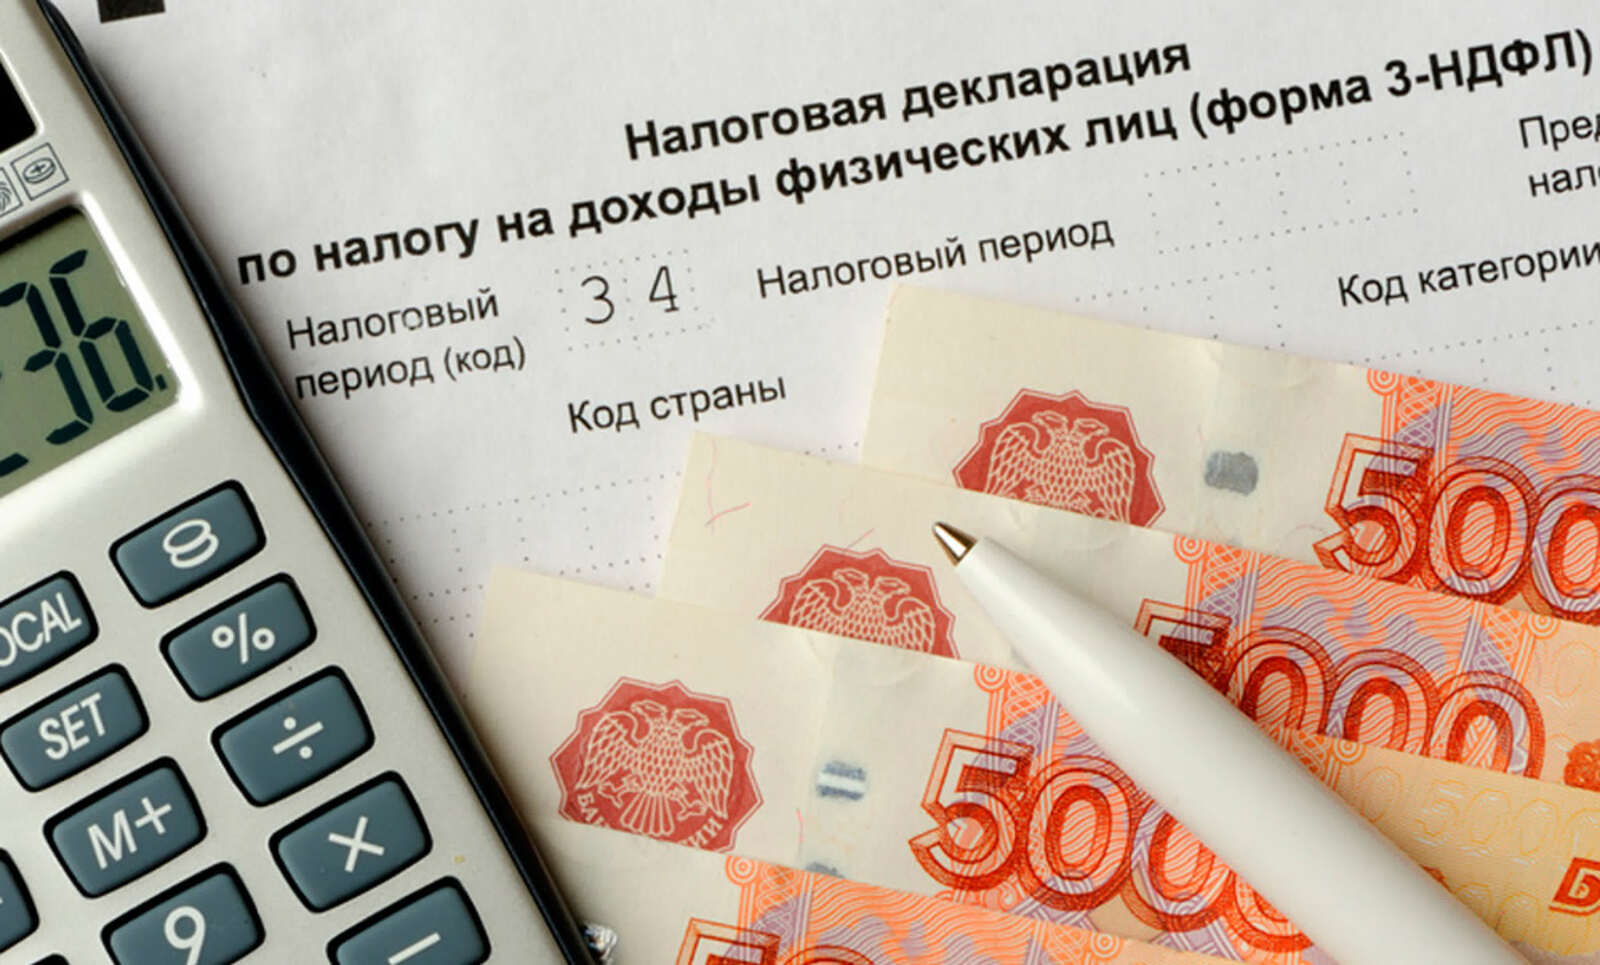 Не нужно подавать декларацию, если доход от продажи недвижимого имущества до 1 000 000 рублей